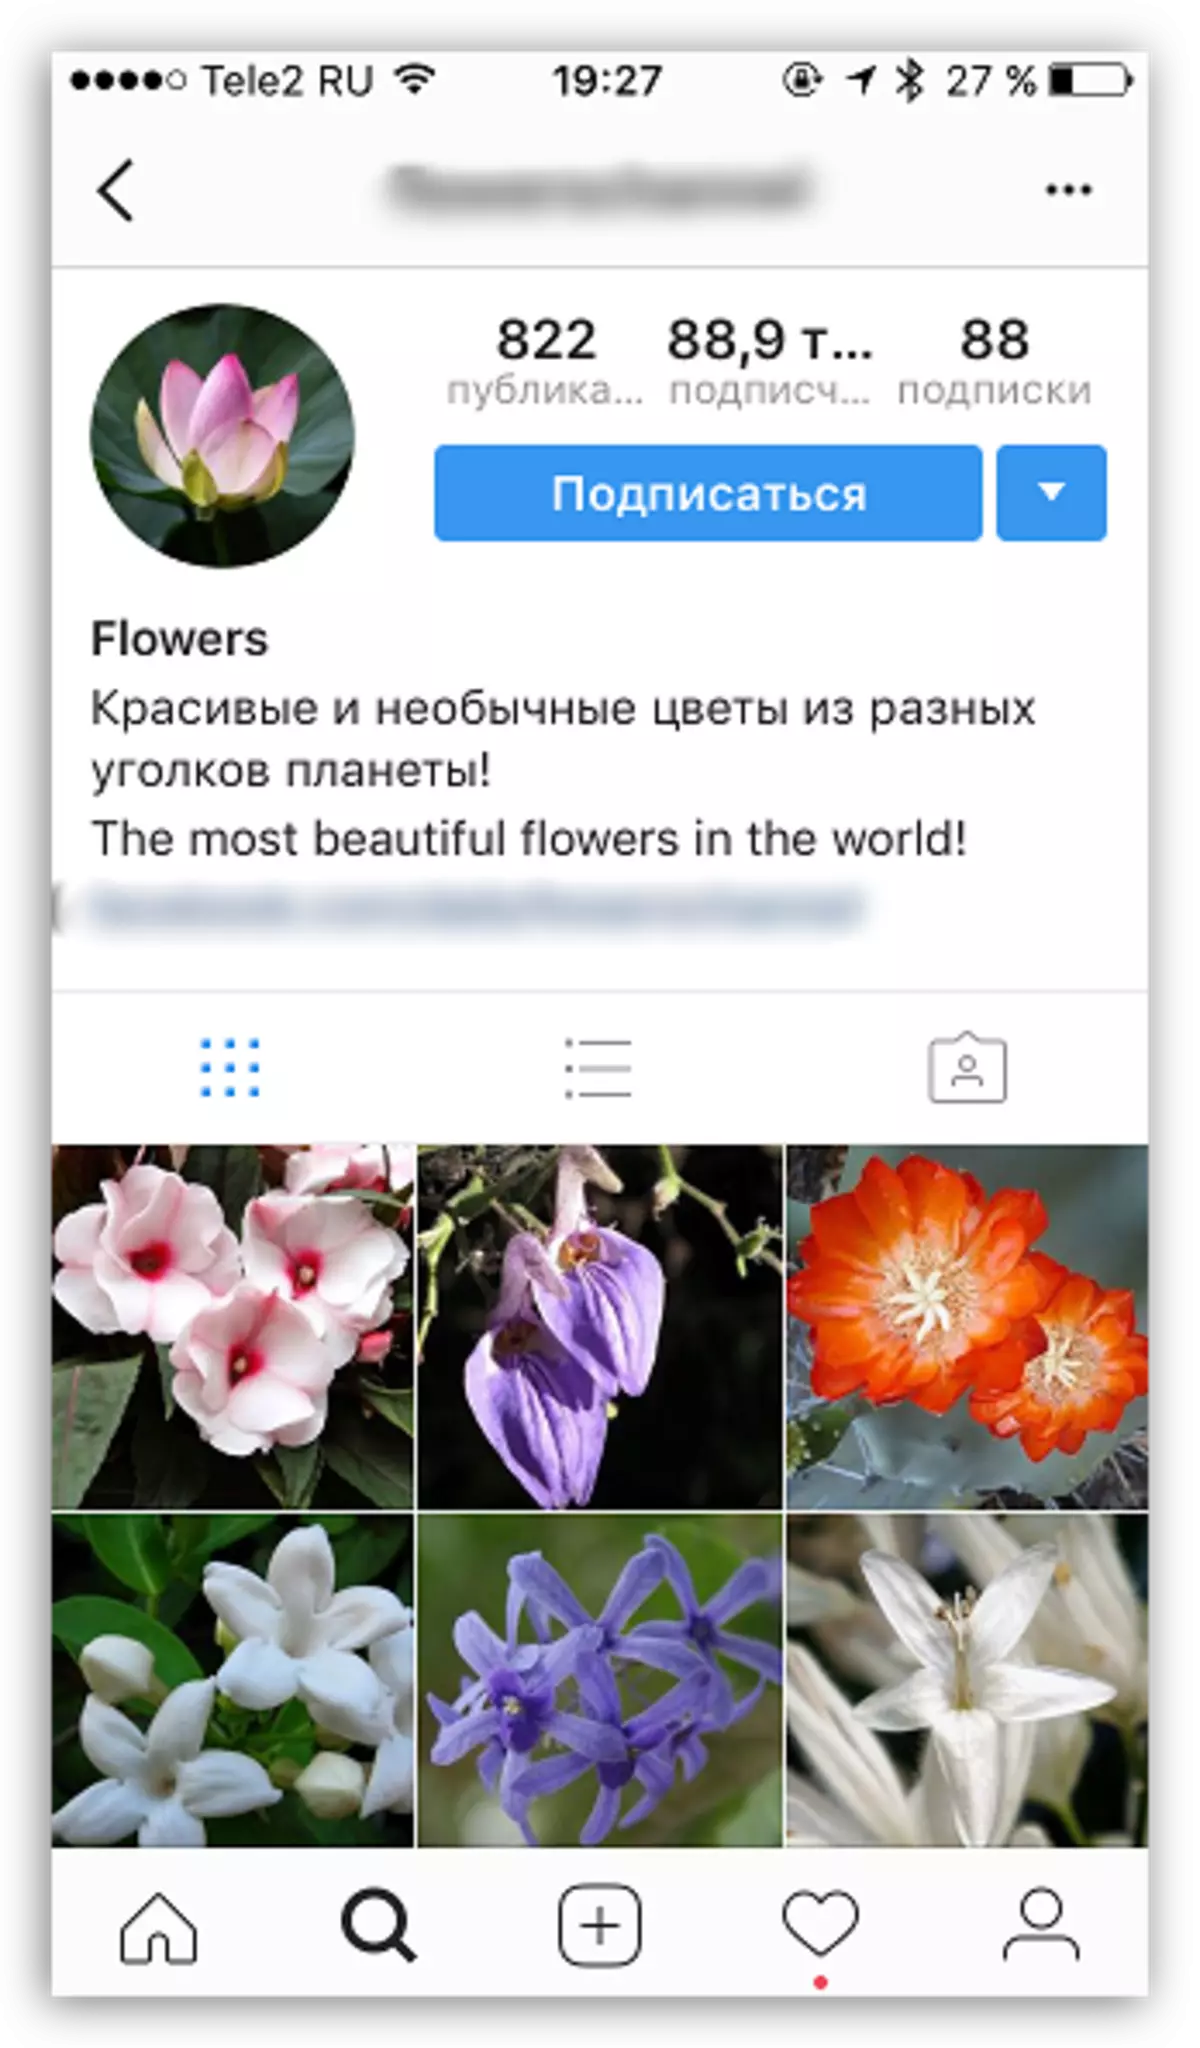 Sådan promoveres profil i Instagram